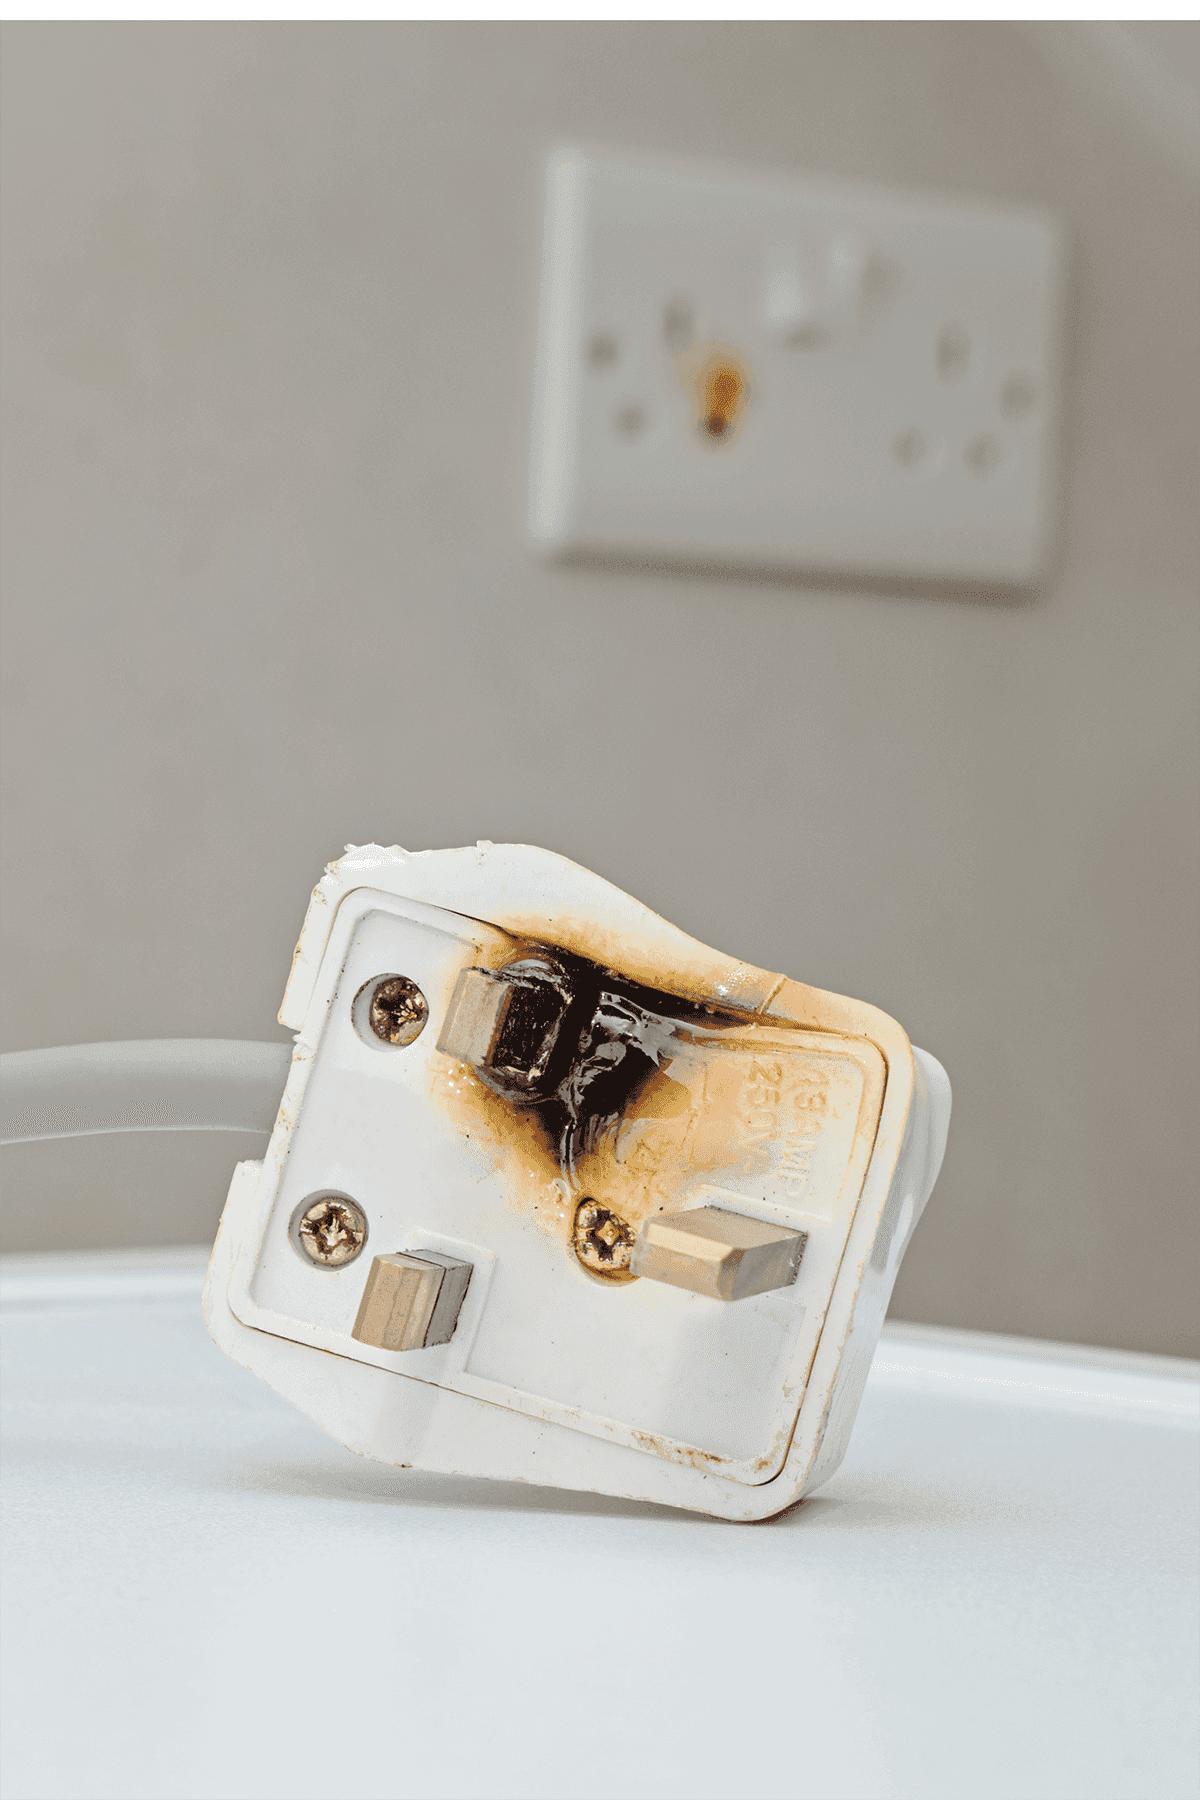 Burned and damaged UK socket